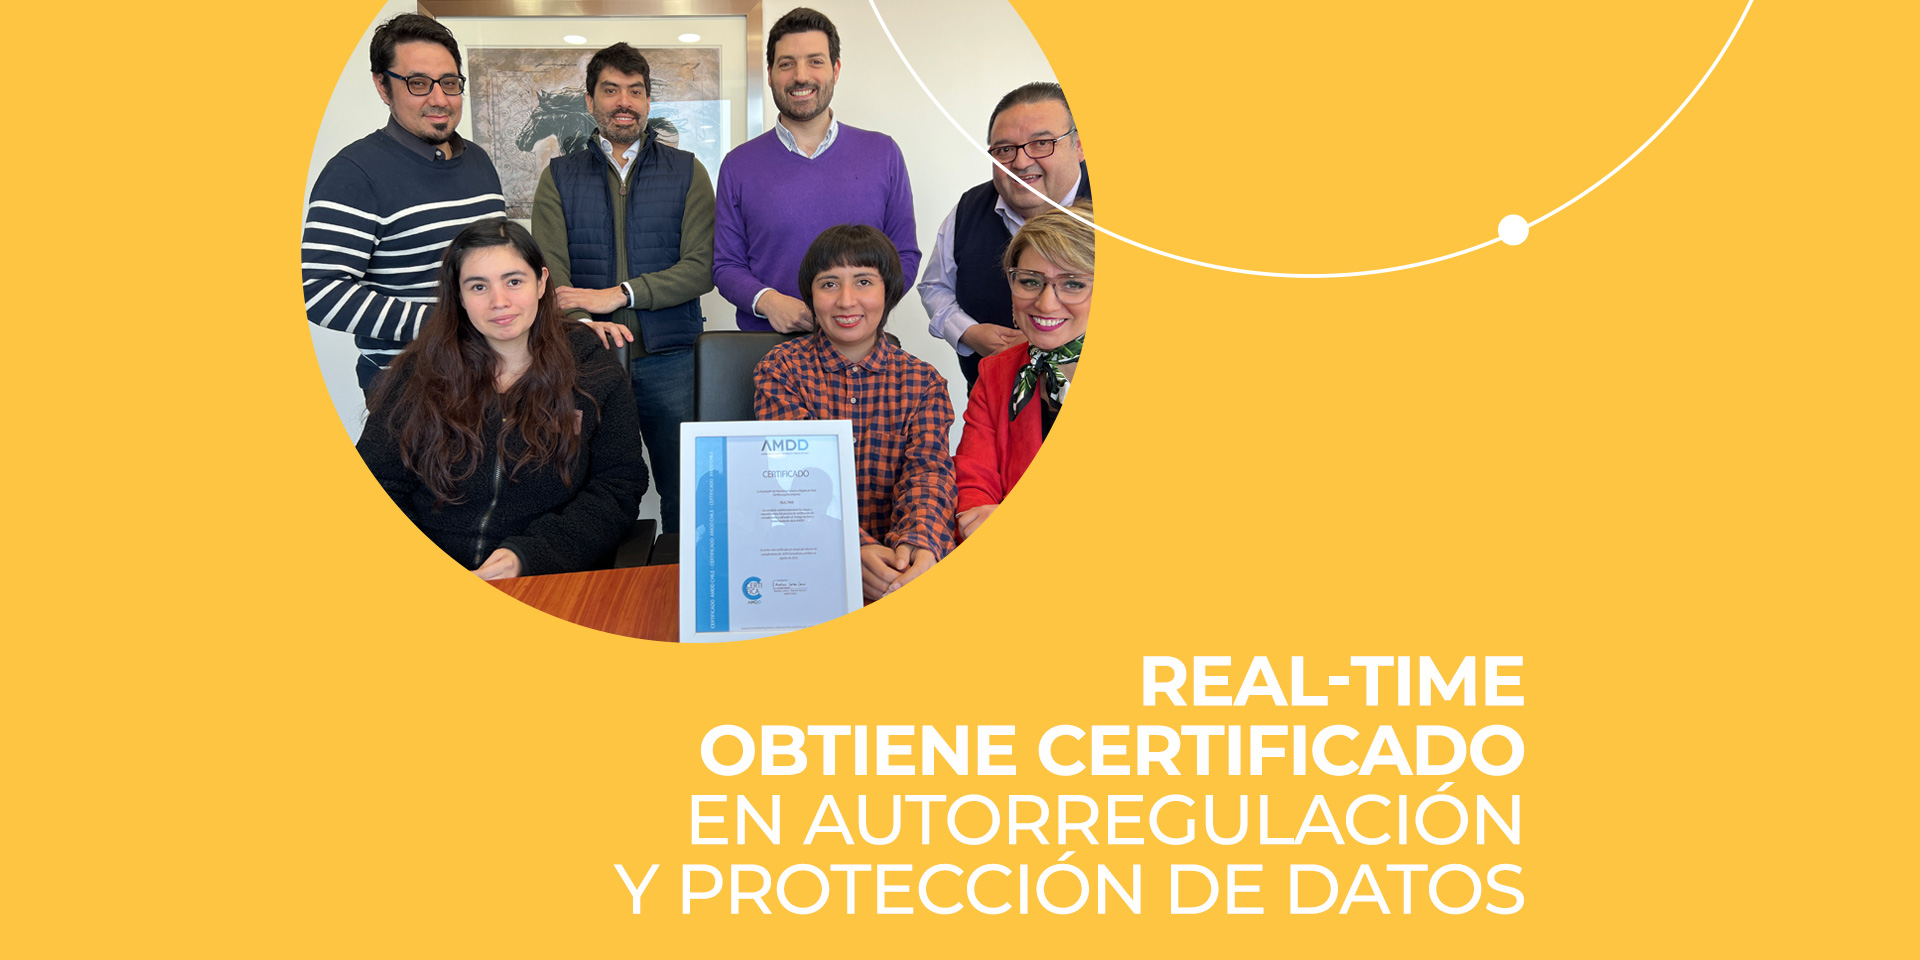 Real-Time obtiene certificado de autorregulación y protección de datos